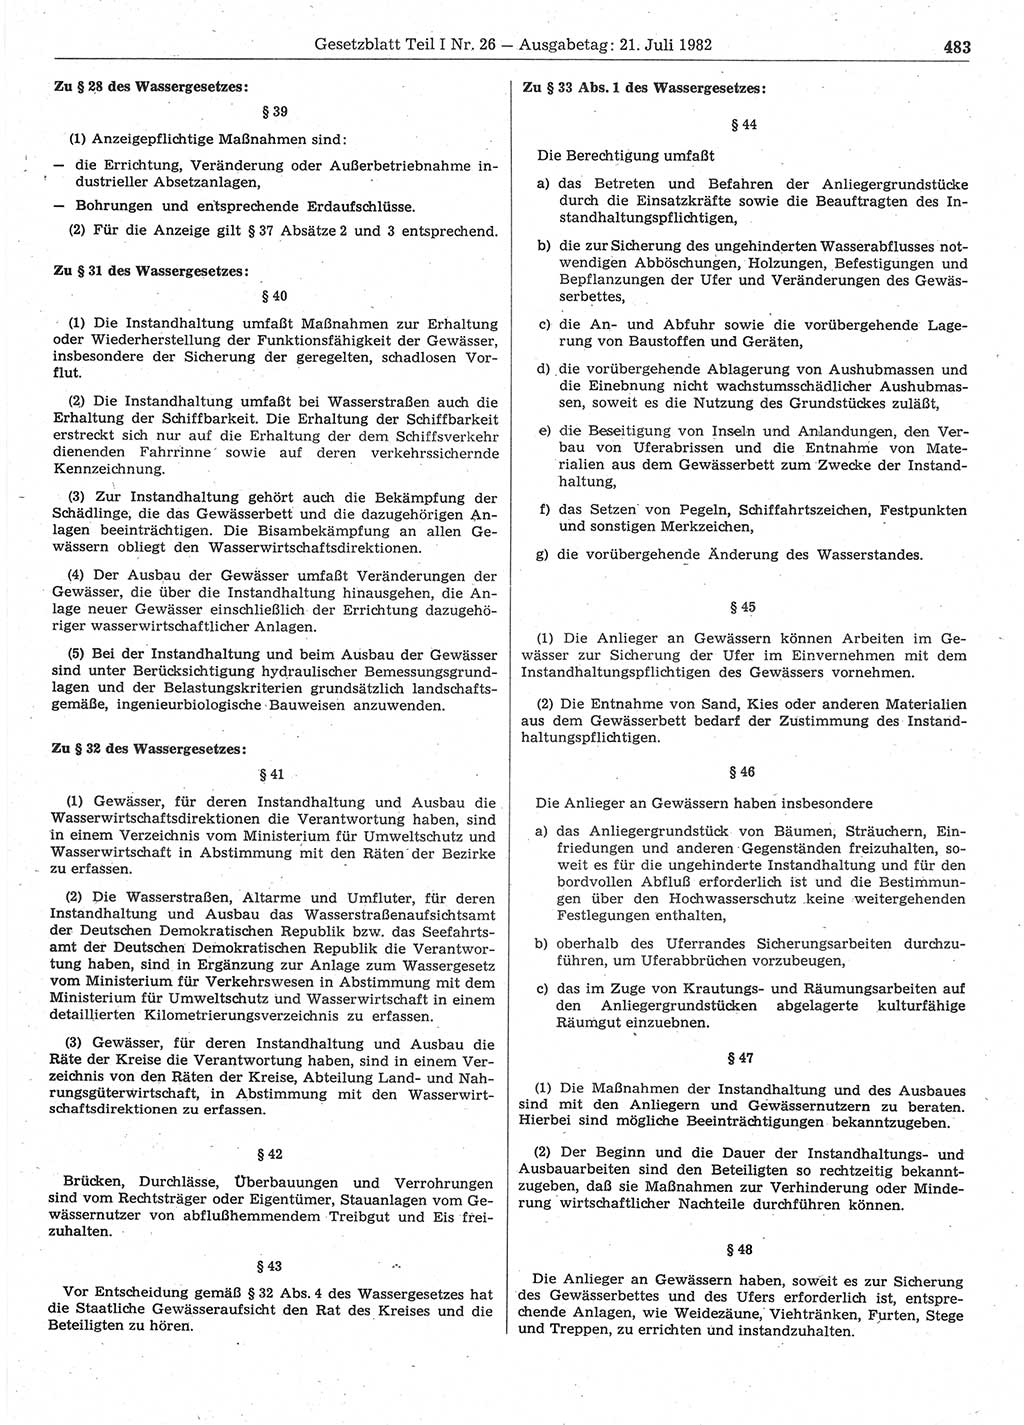 Gesetzblatt (GBl.) der Deutschen Demokratischen Republik (DDR) Teil Ⅰ 1982, Seite 483 (GBl. DDR Ⅰ 1982, S. 483)